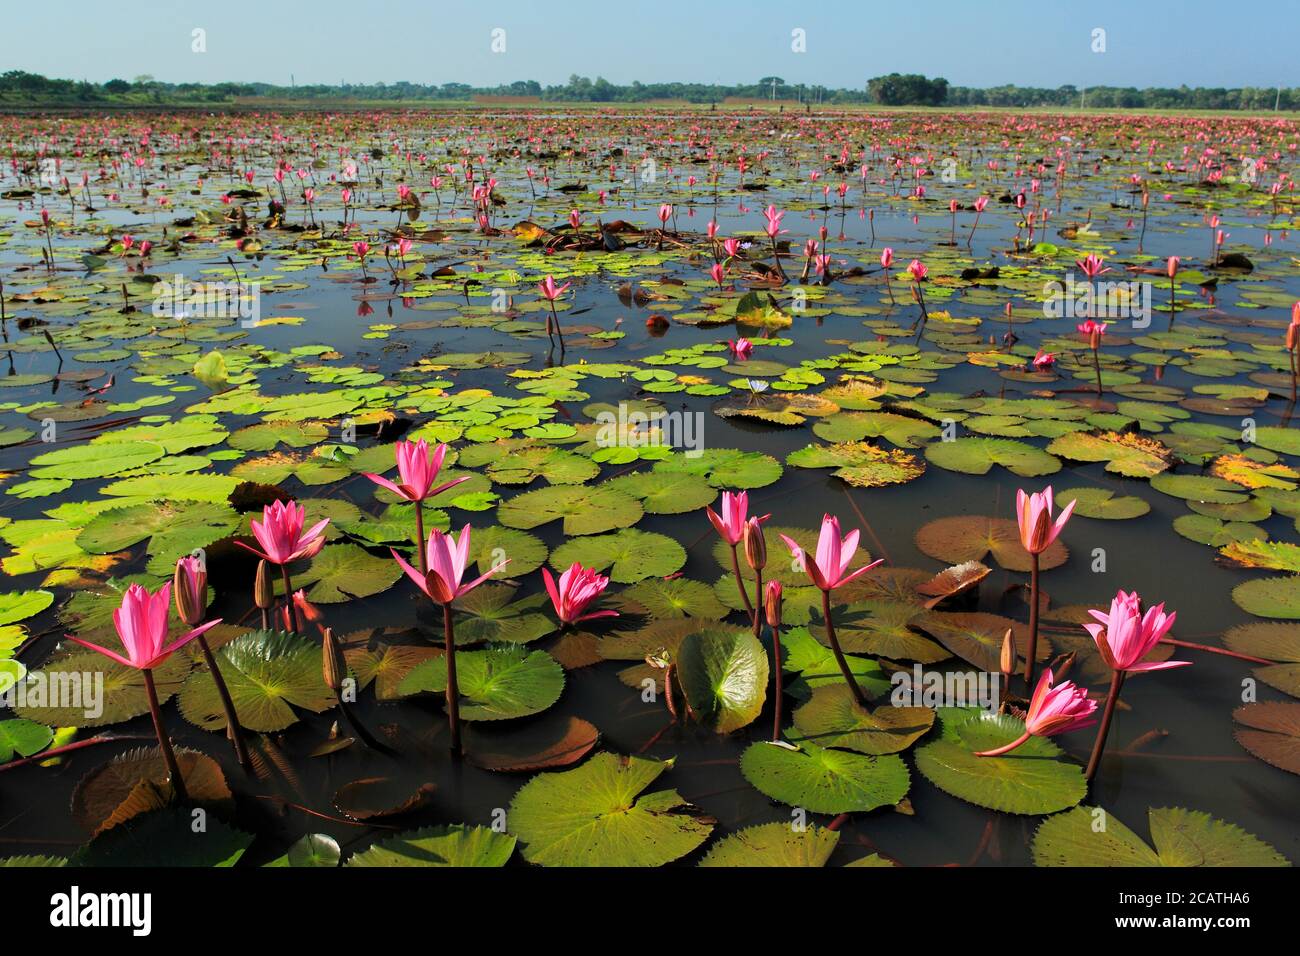 Photo de stock - le Lotus, Nelumbo nucifera, localement connu sous le nom de 'Padma', est une plante aquatique nymphée, trouvée dans les basses terres du Bangladesh. Banque D'Images